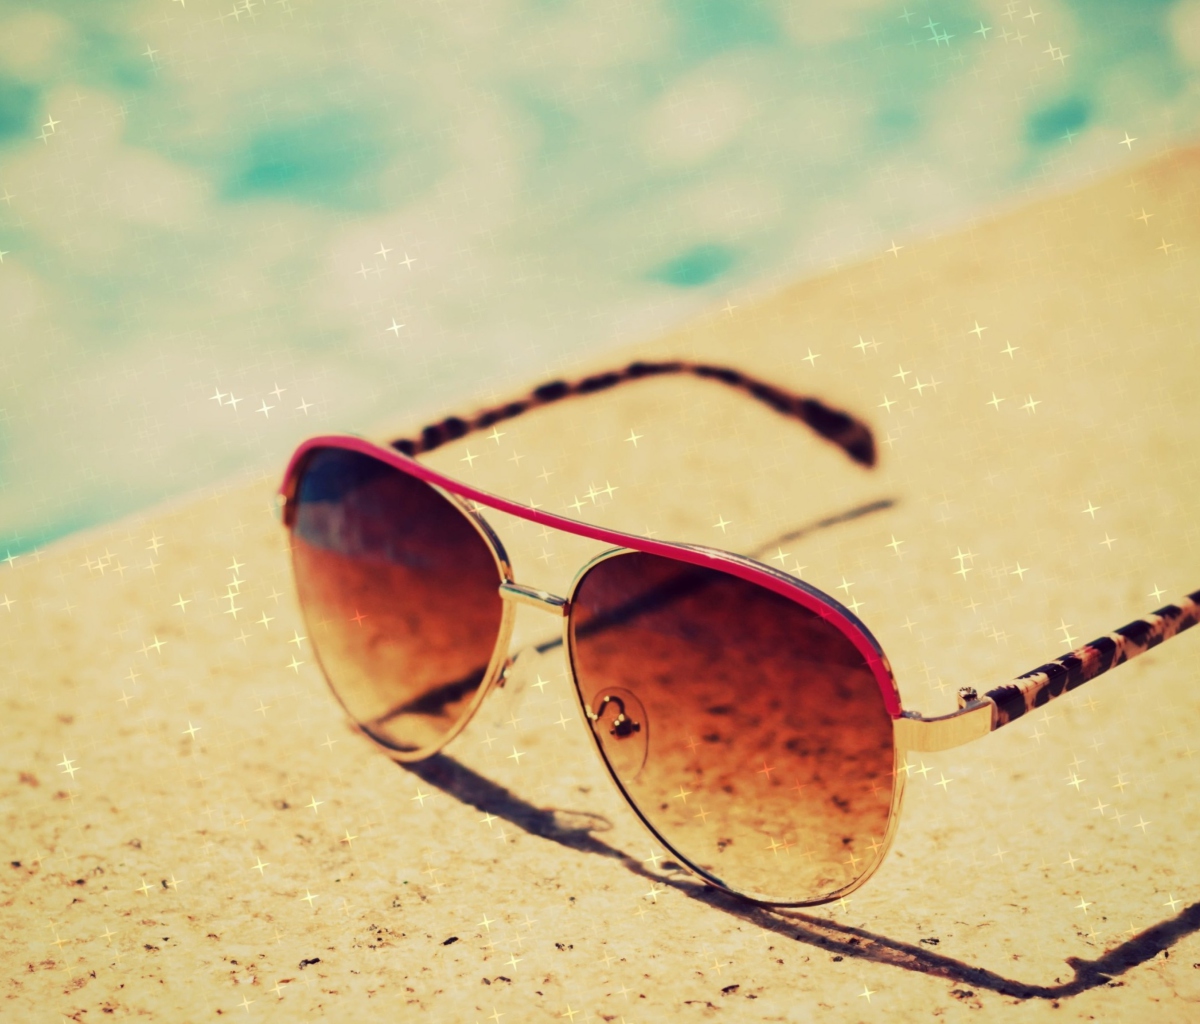 Обои Sunglasses By Pool 1200x1024